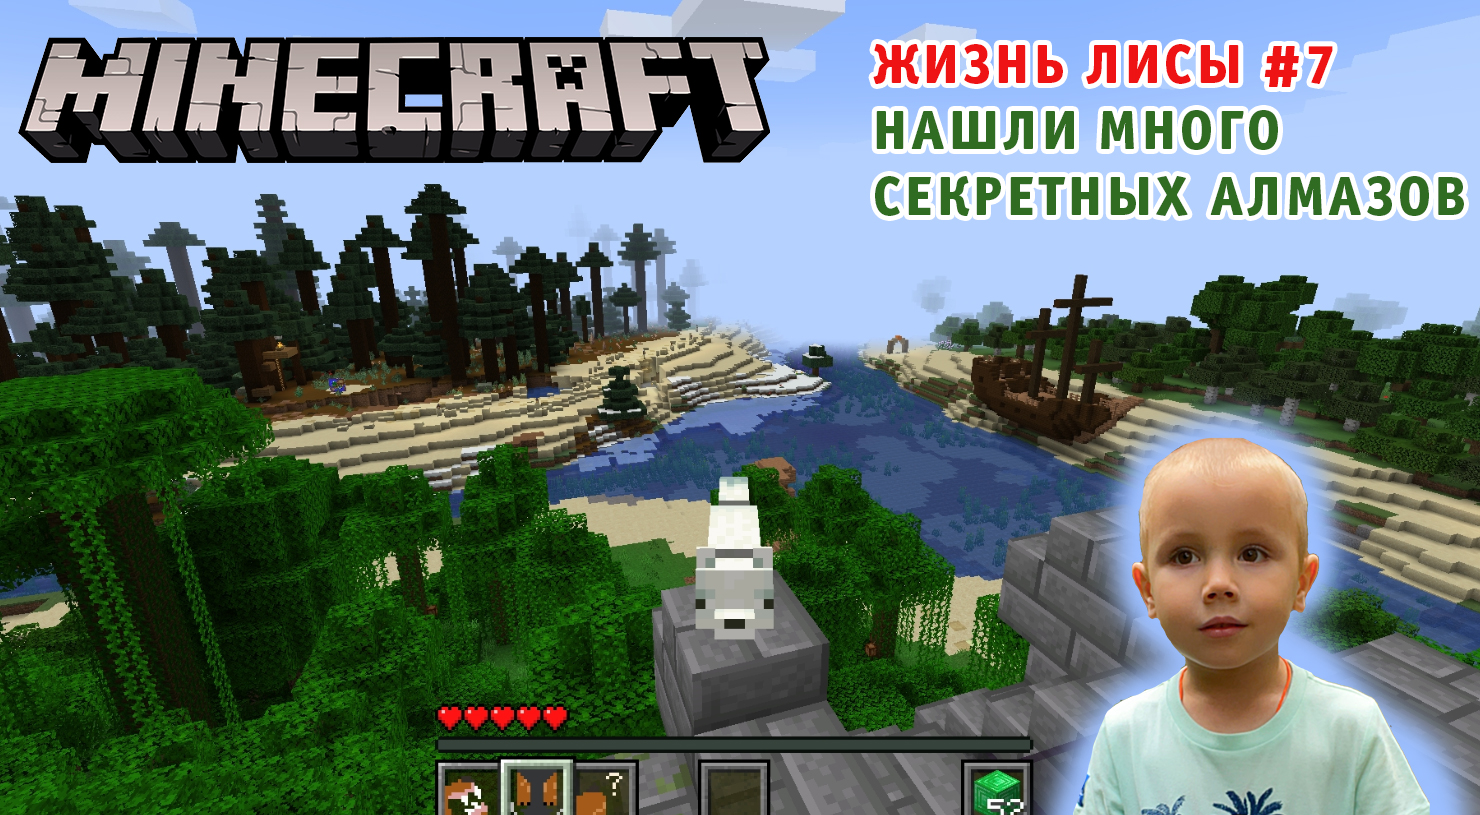 Minecraft A Fox's Life ➤ Игра Майнкрафт Жизнь Лисы ➤ Часть #7 ➤ Нашли вход к создателю за 25 алмазов